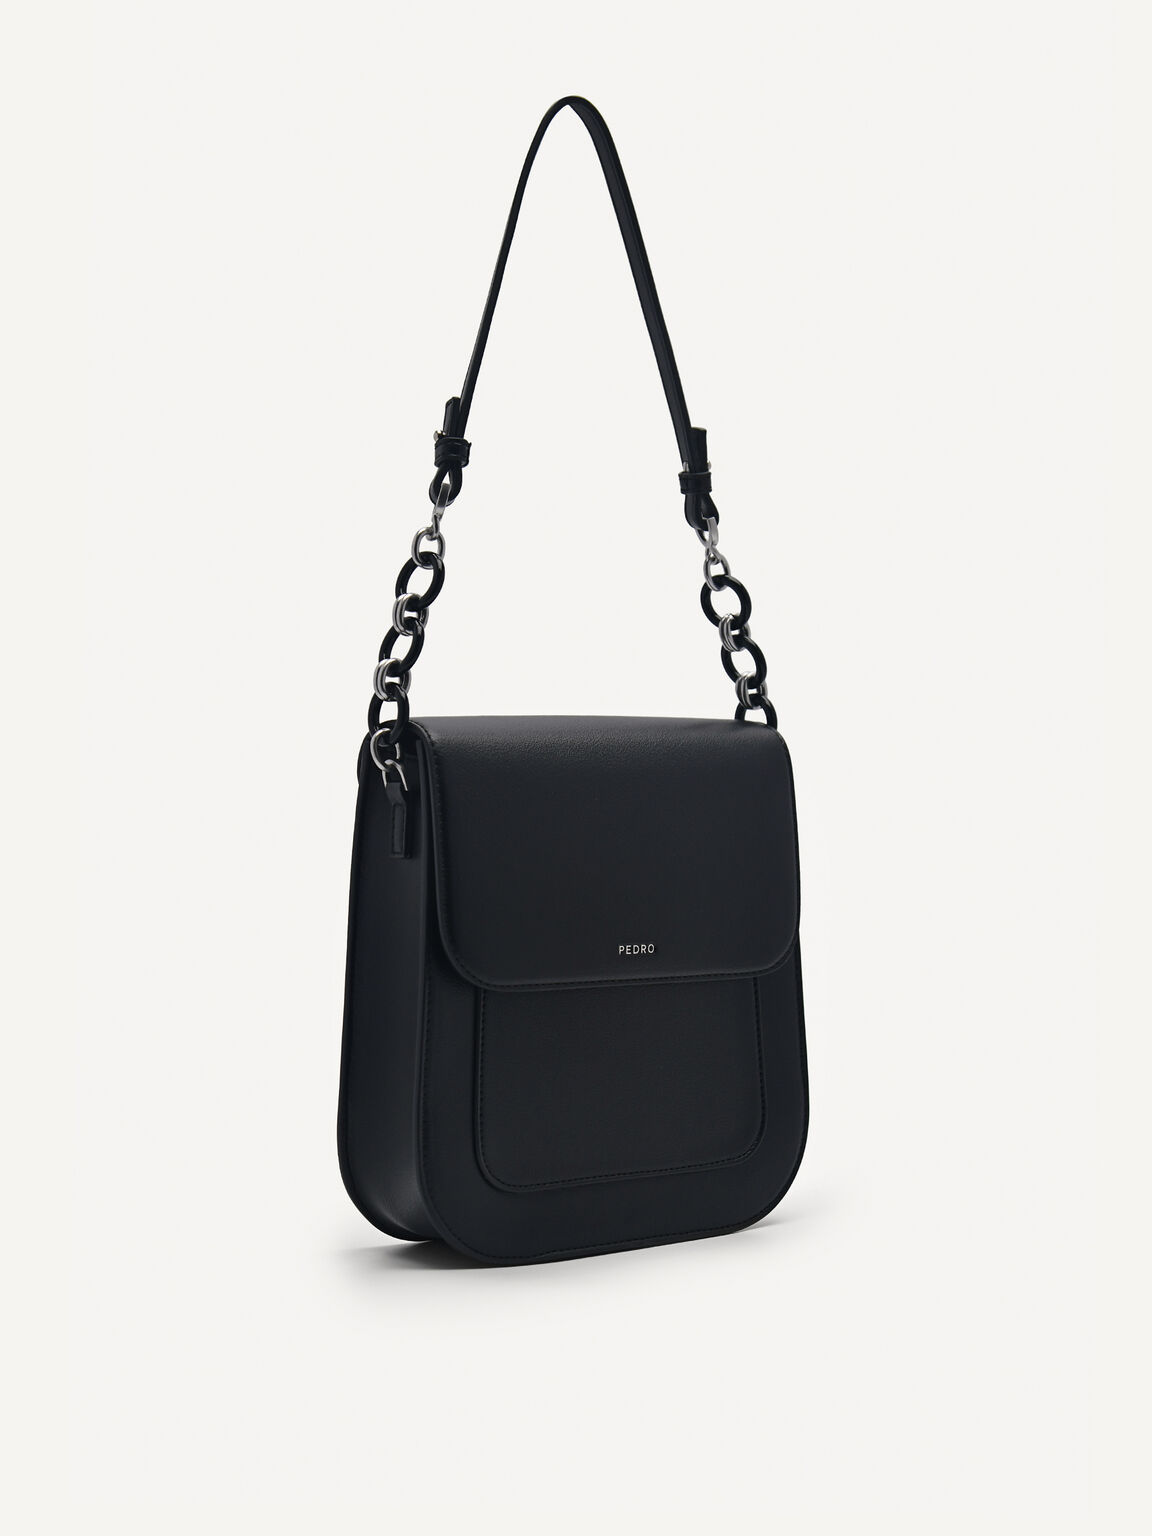 Sydney Shoulder Bag, Black, hi-res